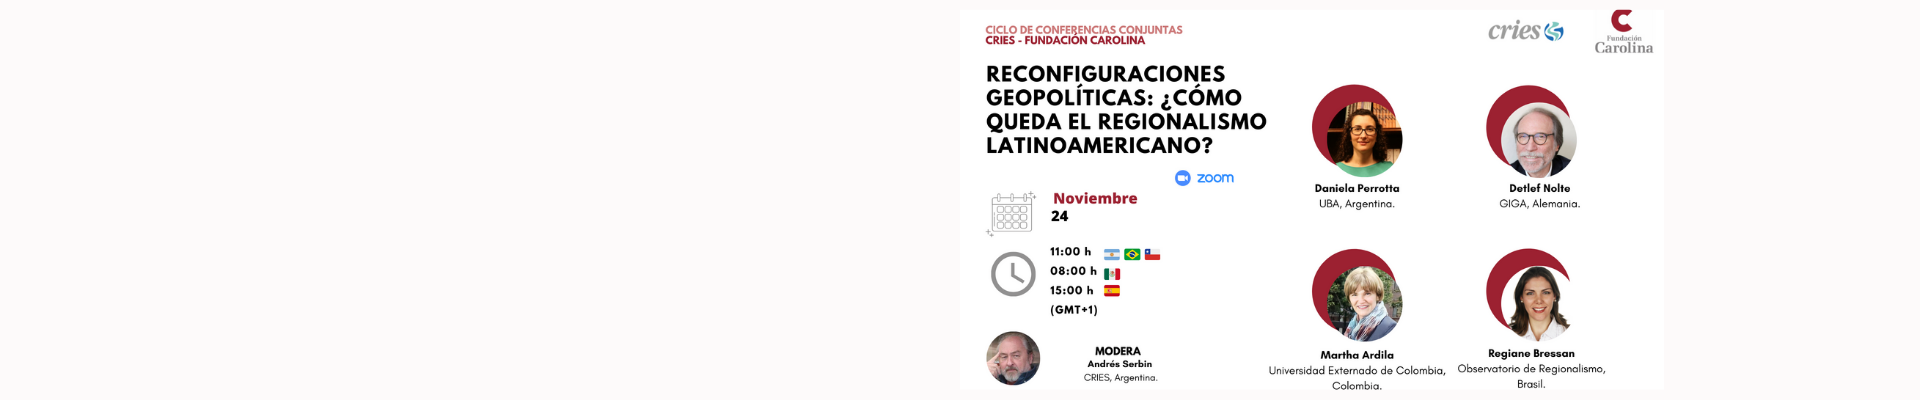 Ciclo de conferencias conjuntas (Fundación Carolina – CRIES): Reconfiguraciones geopolíticas: ¿Cómo queda el regionalismo latinoamericano?